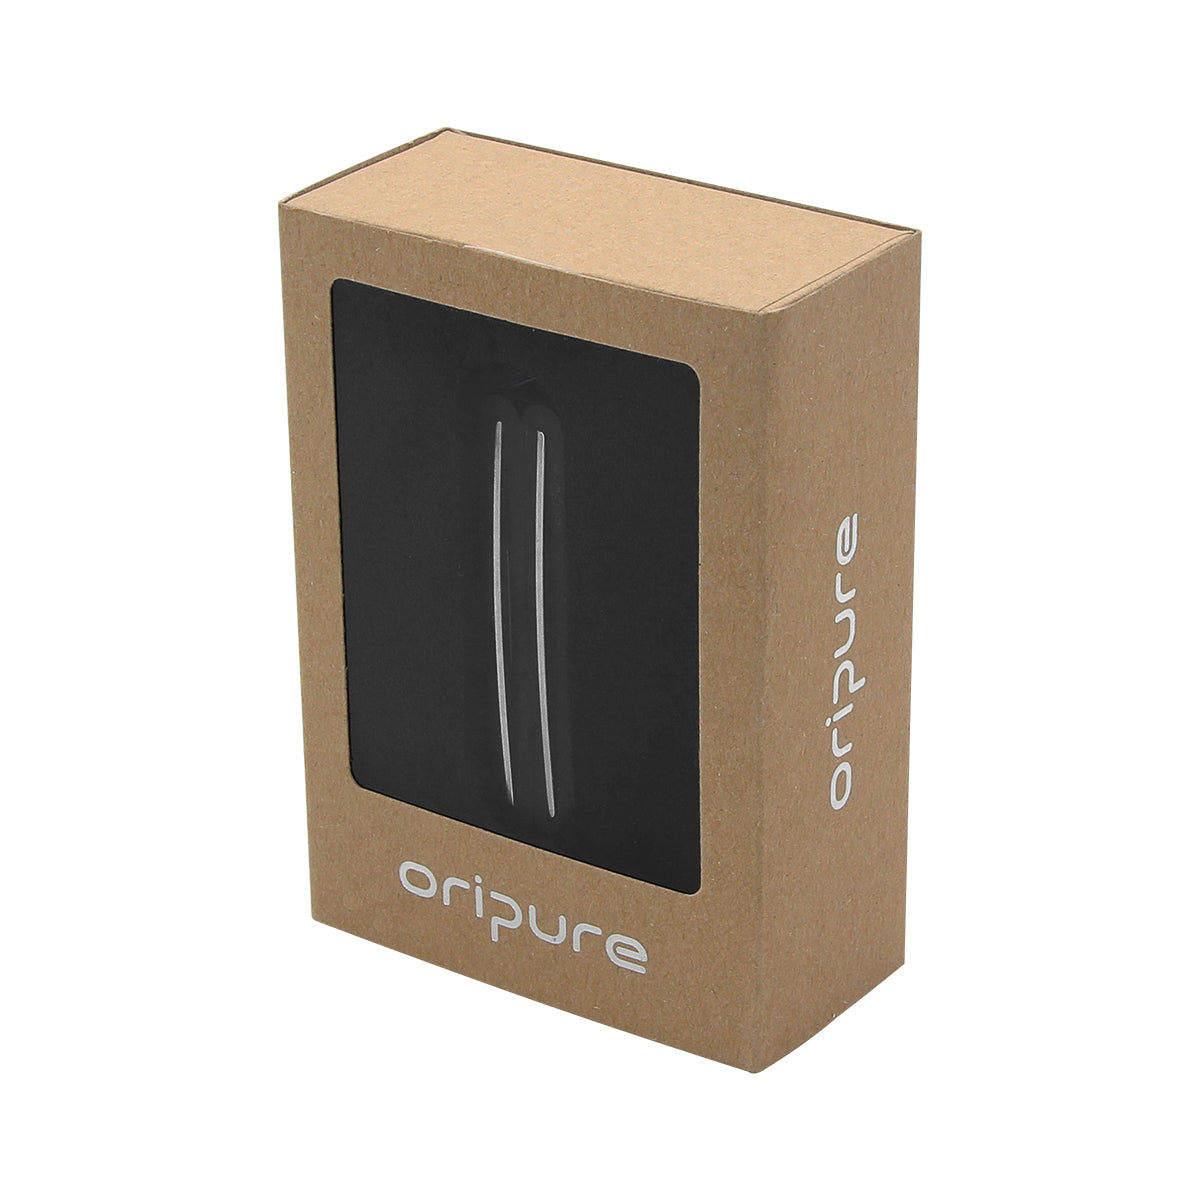 OriPure Alnico 5 Hot Dual Rails Pickup Humbucker Guitar Pickup pour Tele -Bridge 13.6k